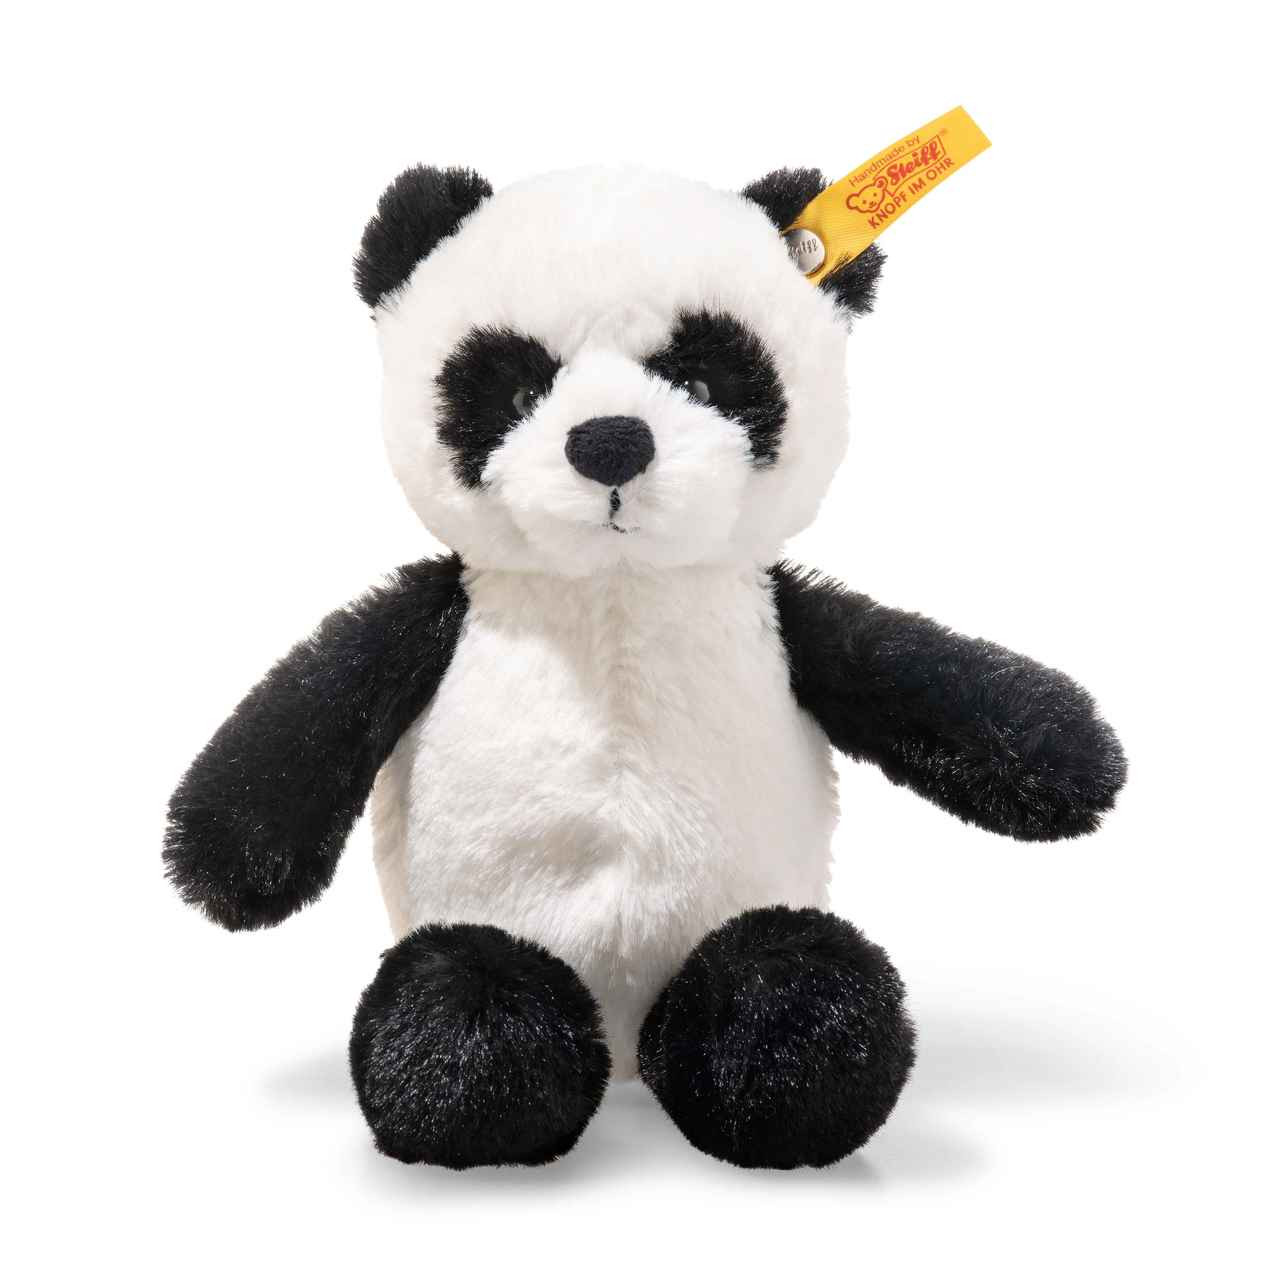 cuddly panda toy